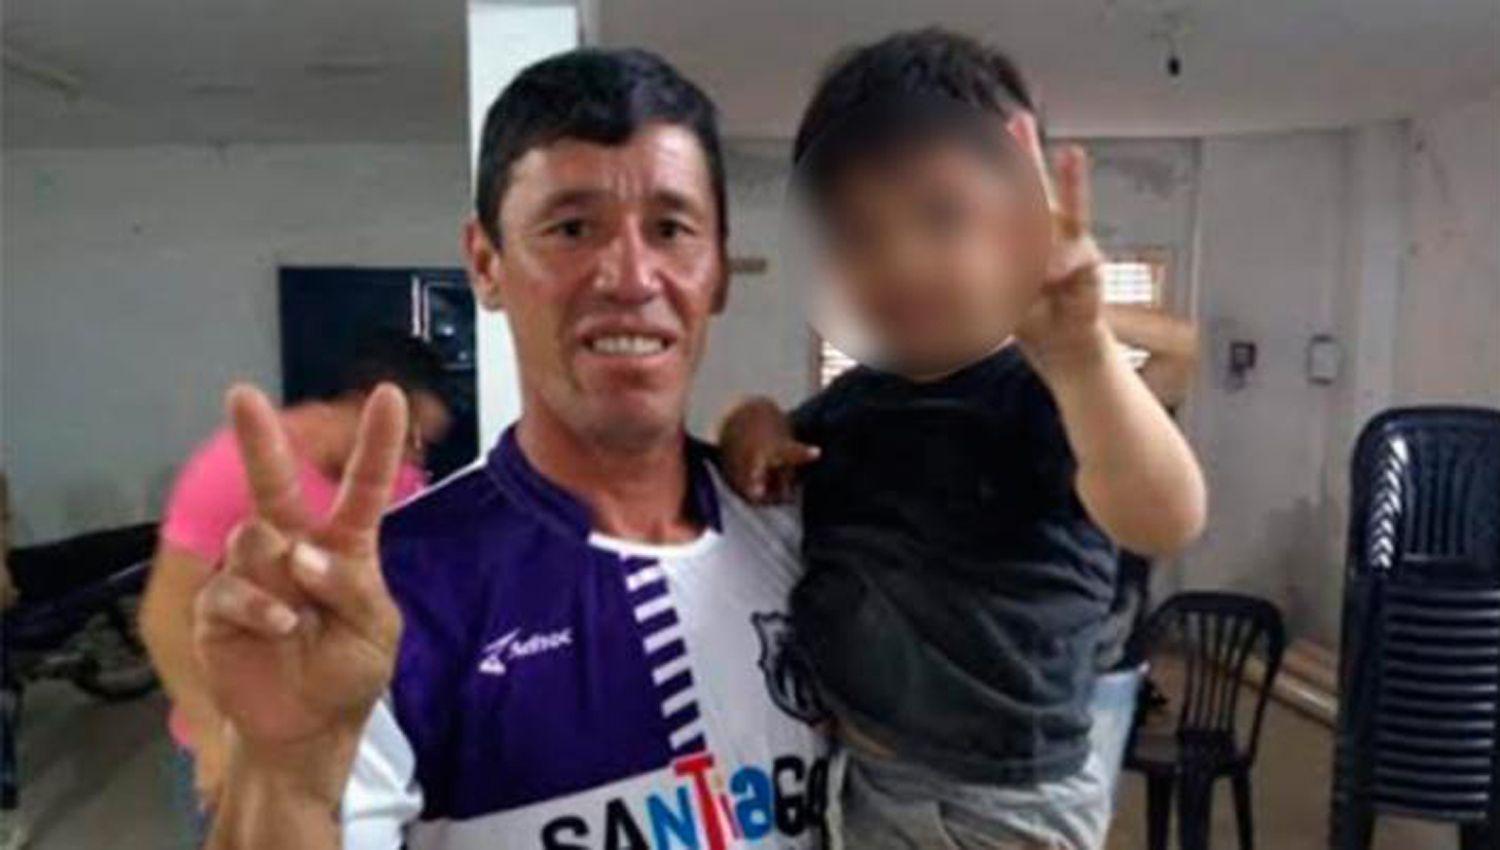 Los supuestos asesinos del futbolista Chaacutevez seraacuten imputados de homicidio simple